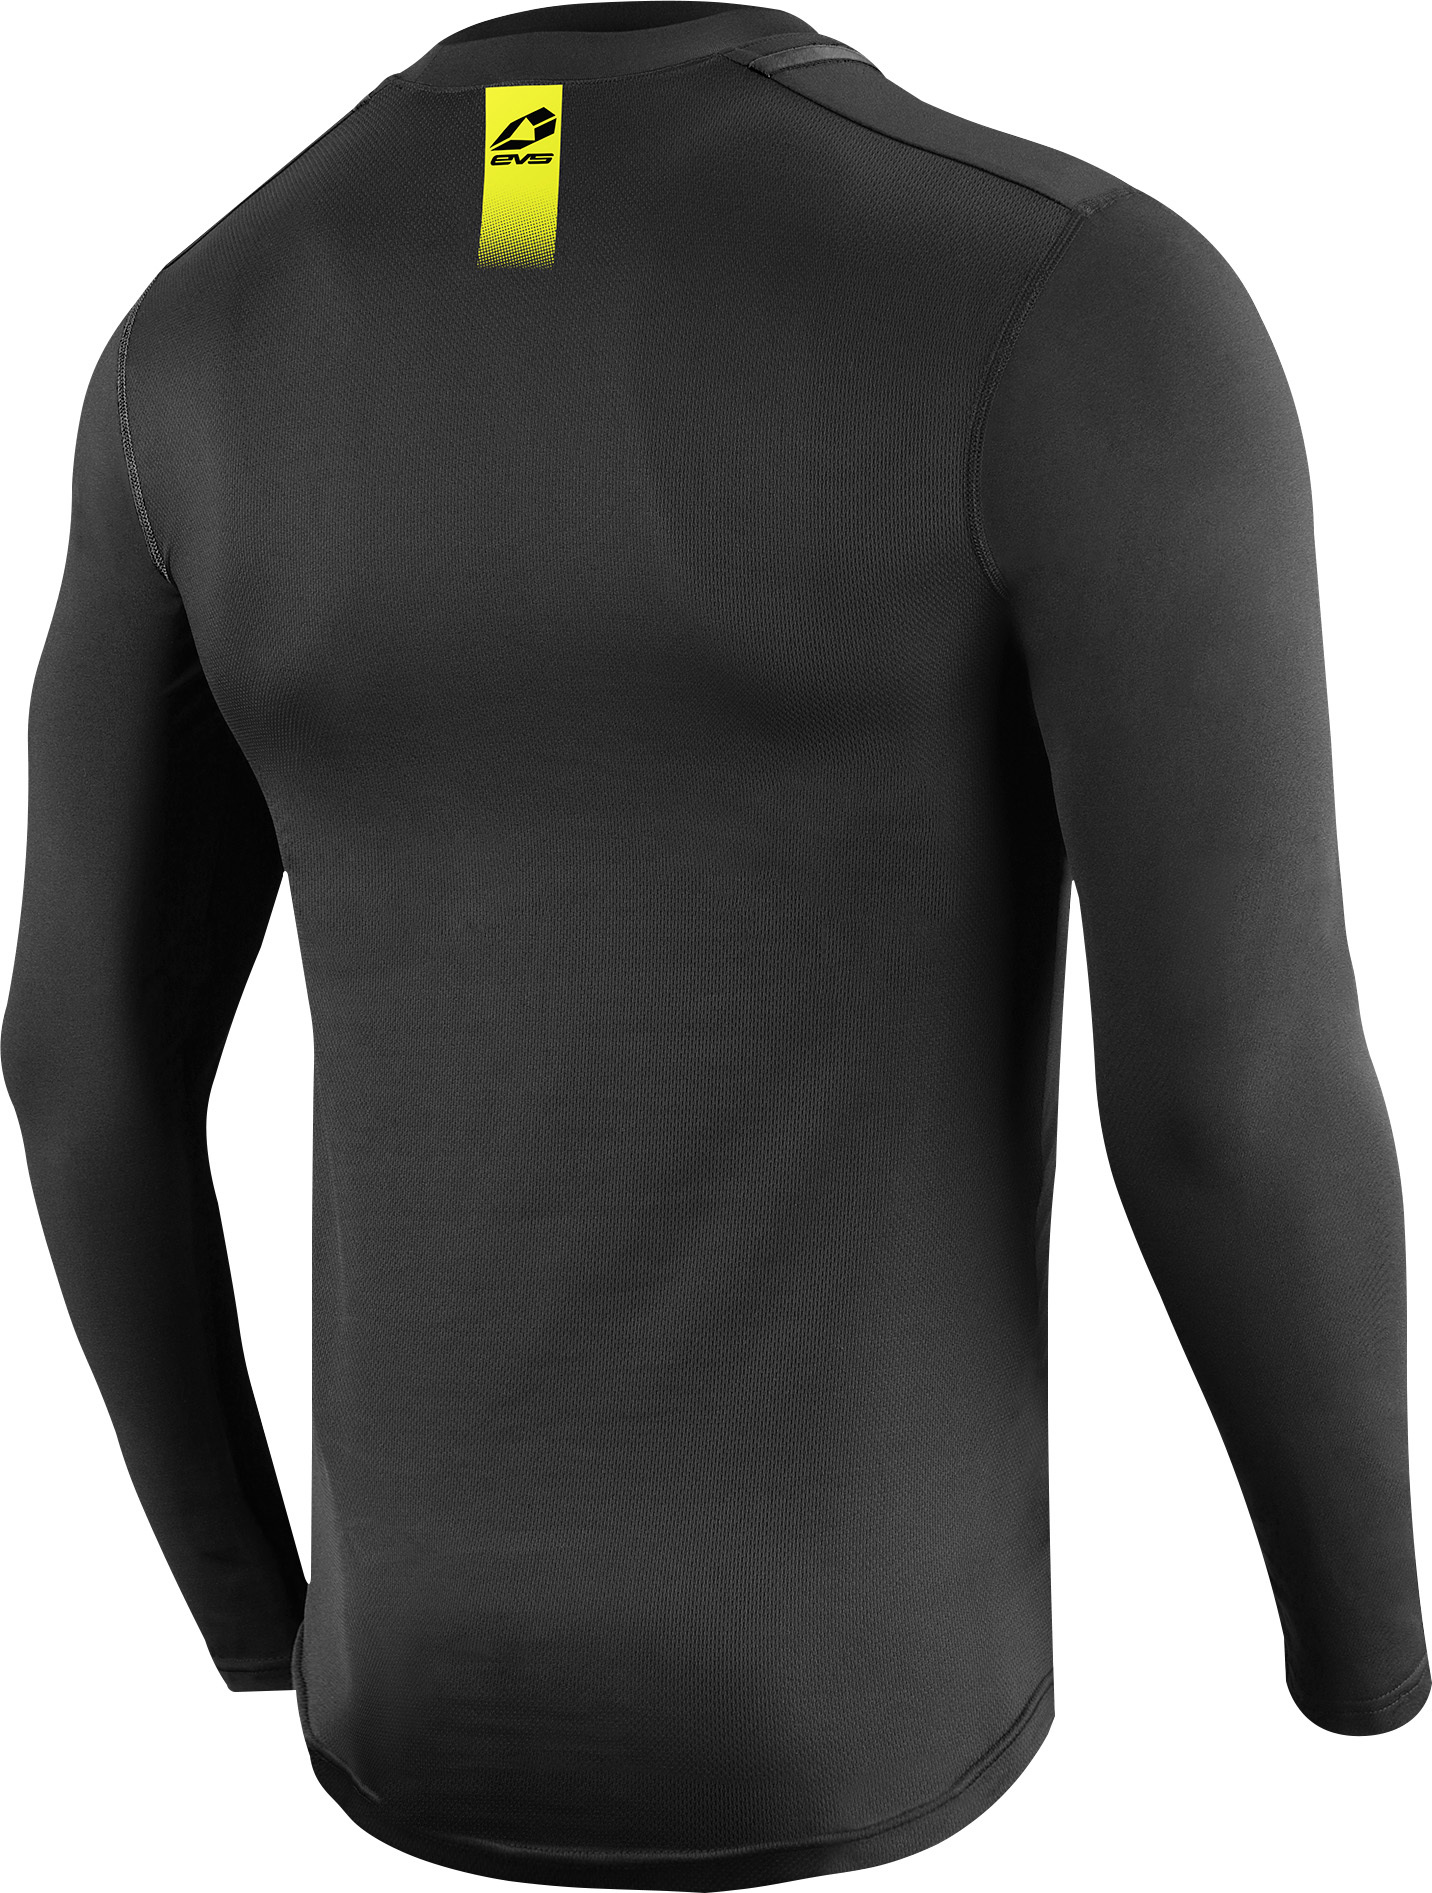 Long Sleeve Tug Shirt Black Small - Click Image to Close